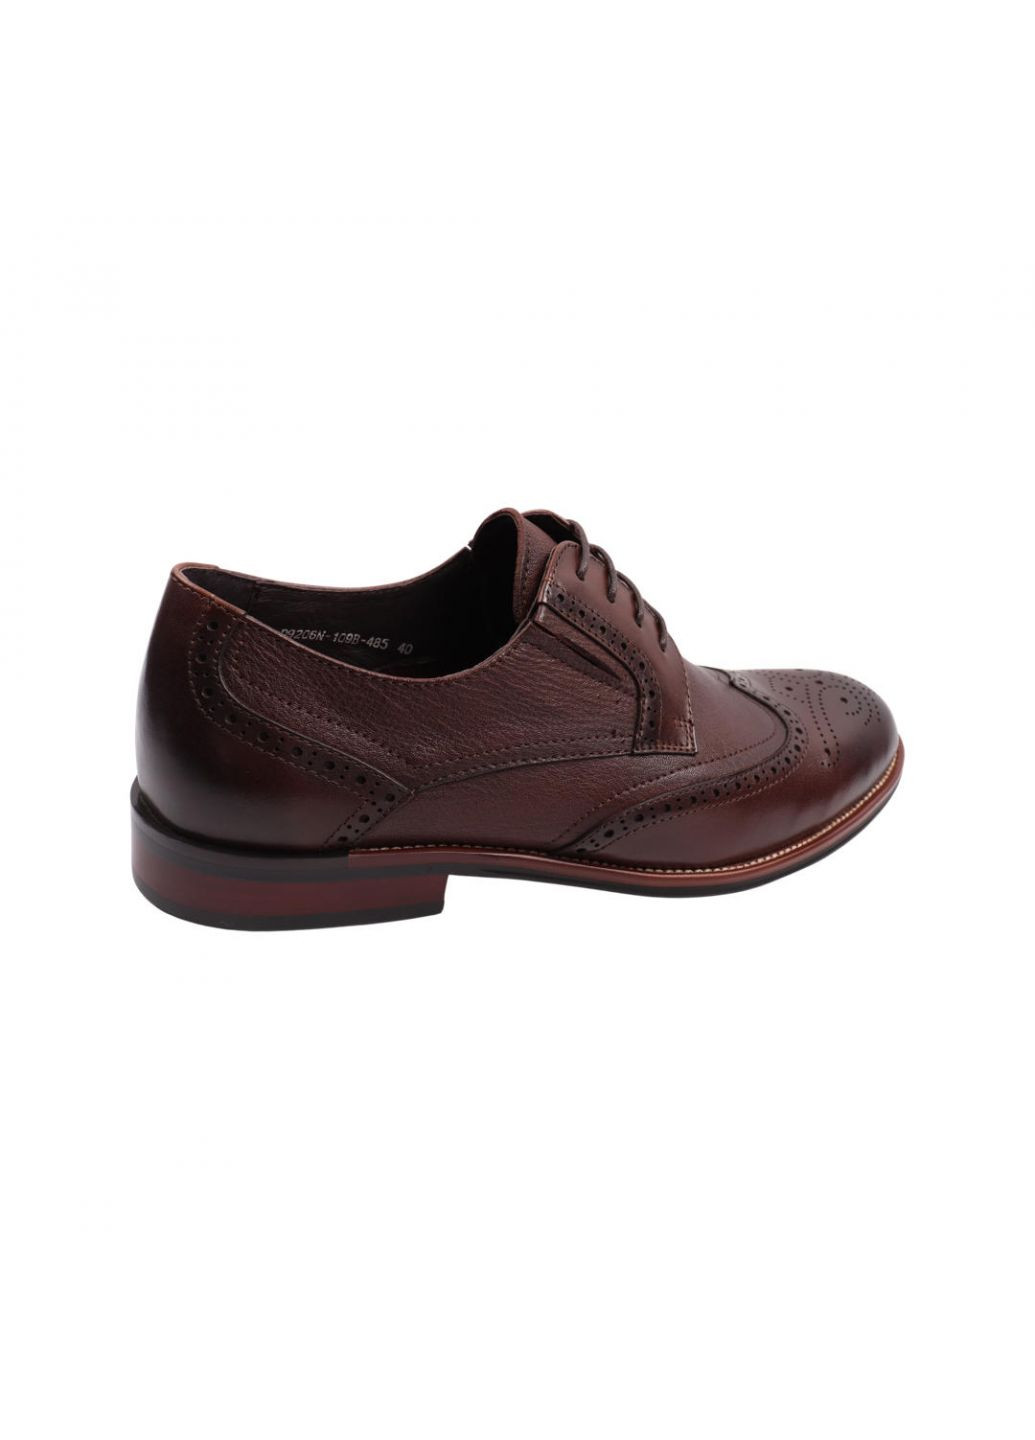 Коричневые туфли мужские коричневые натуральная кожа Cosottinni